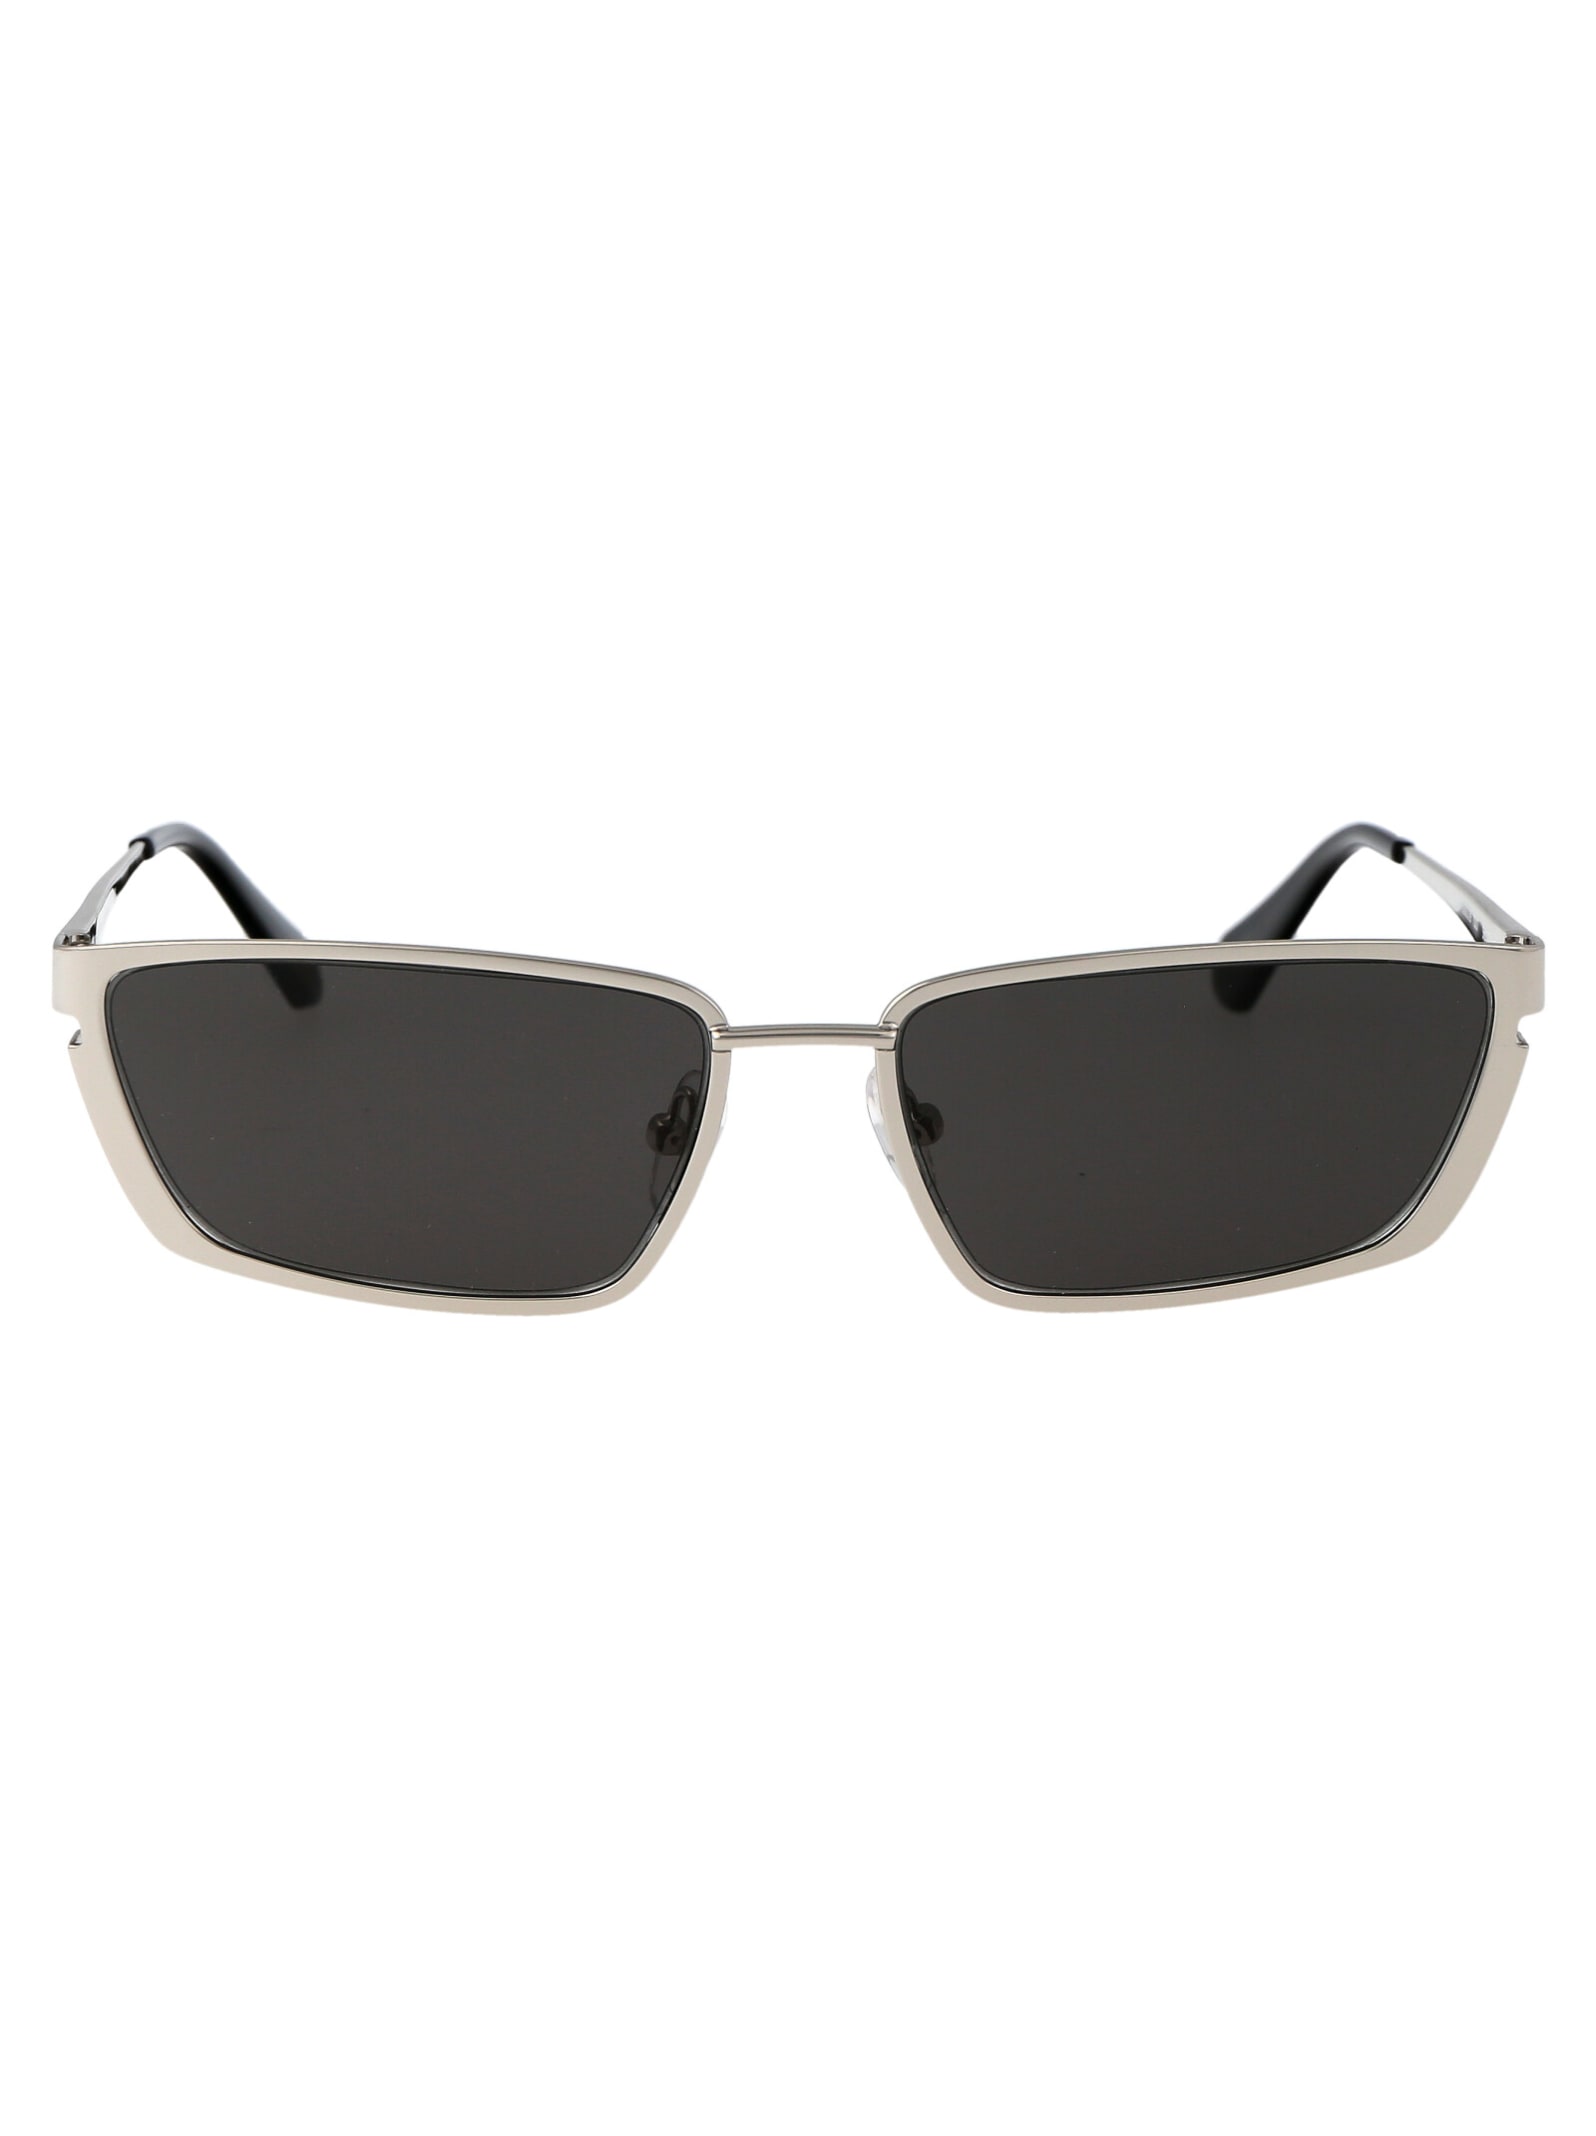 Off-white Sunglasses In 7207 Silver